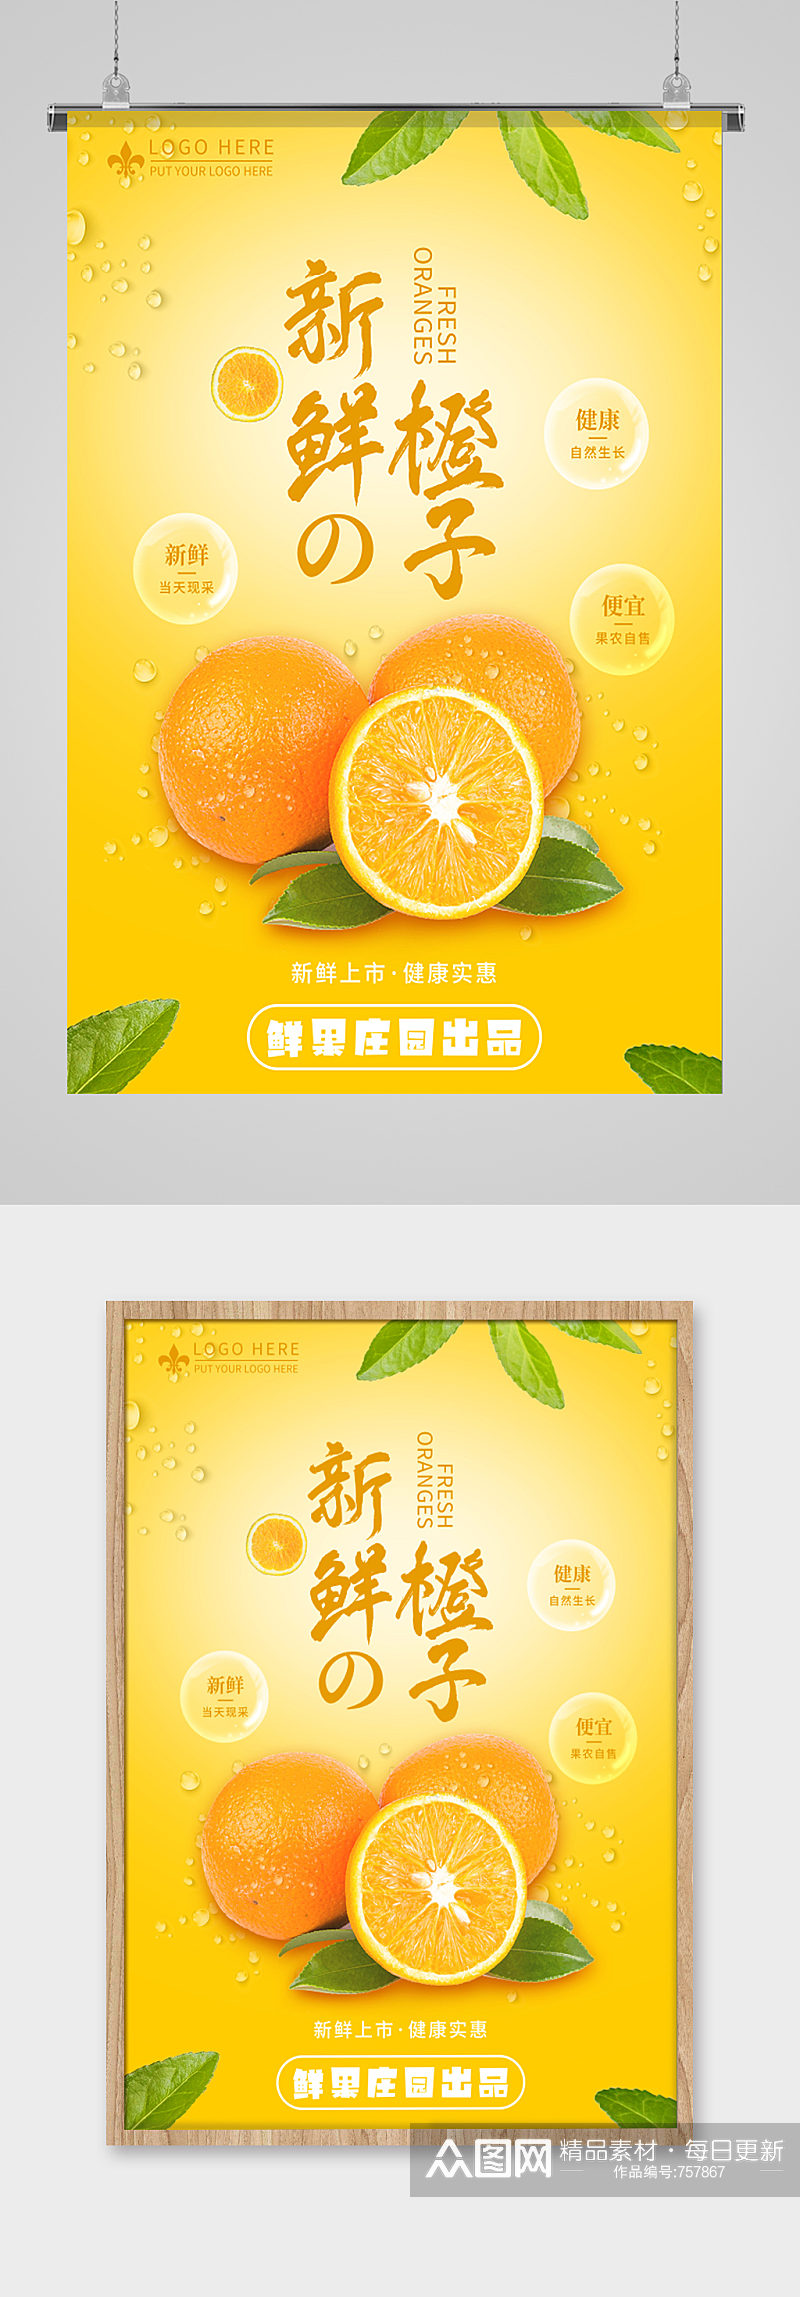 新鲜橙子水果宣传海报素材